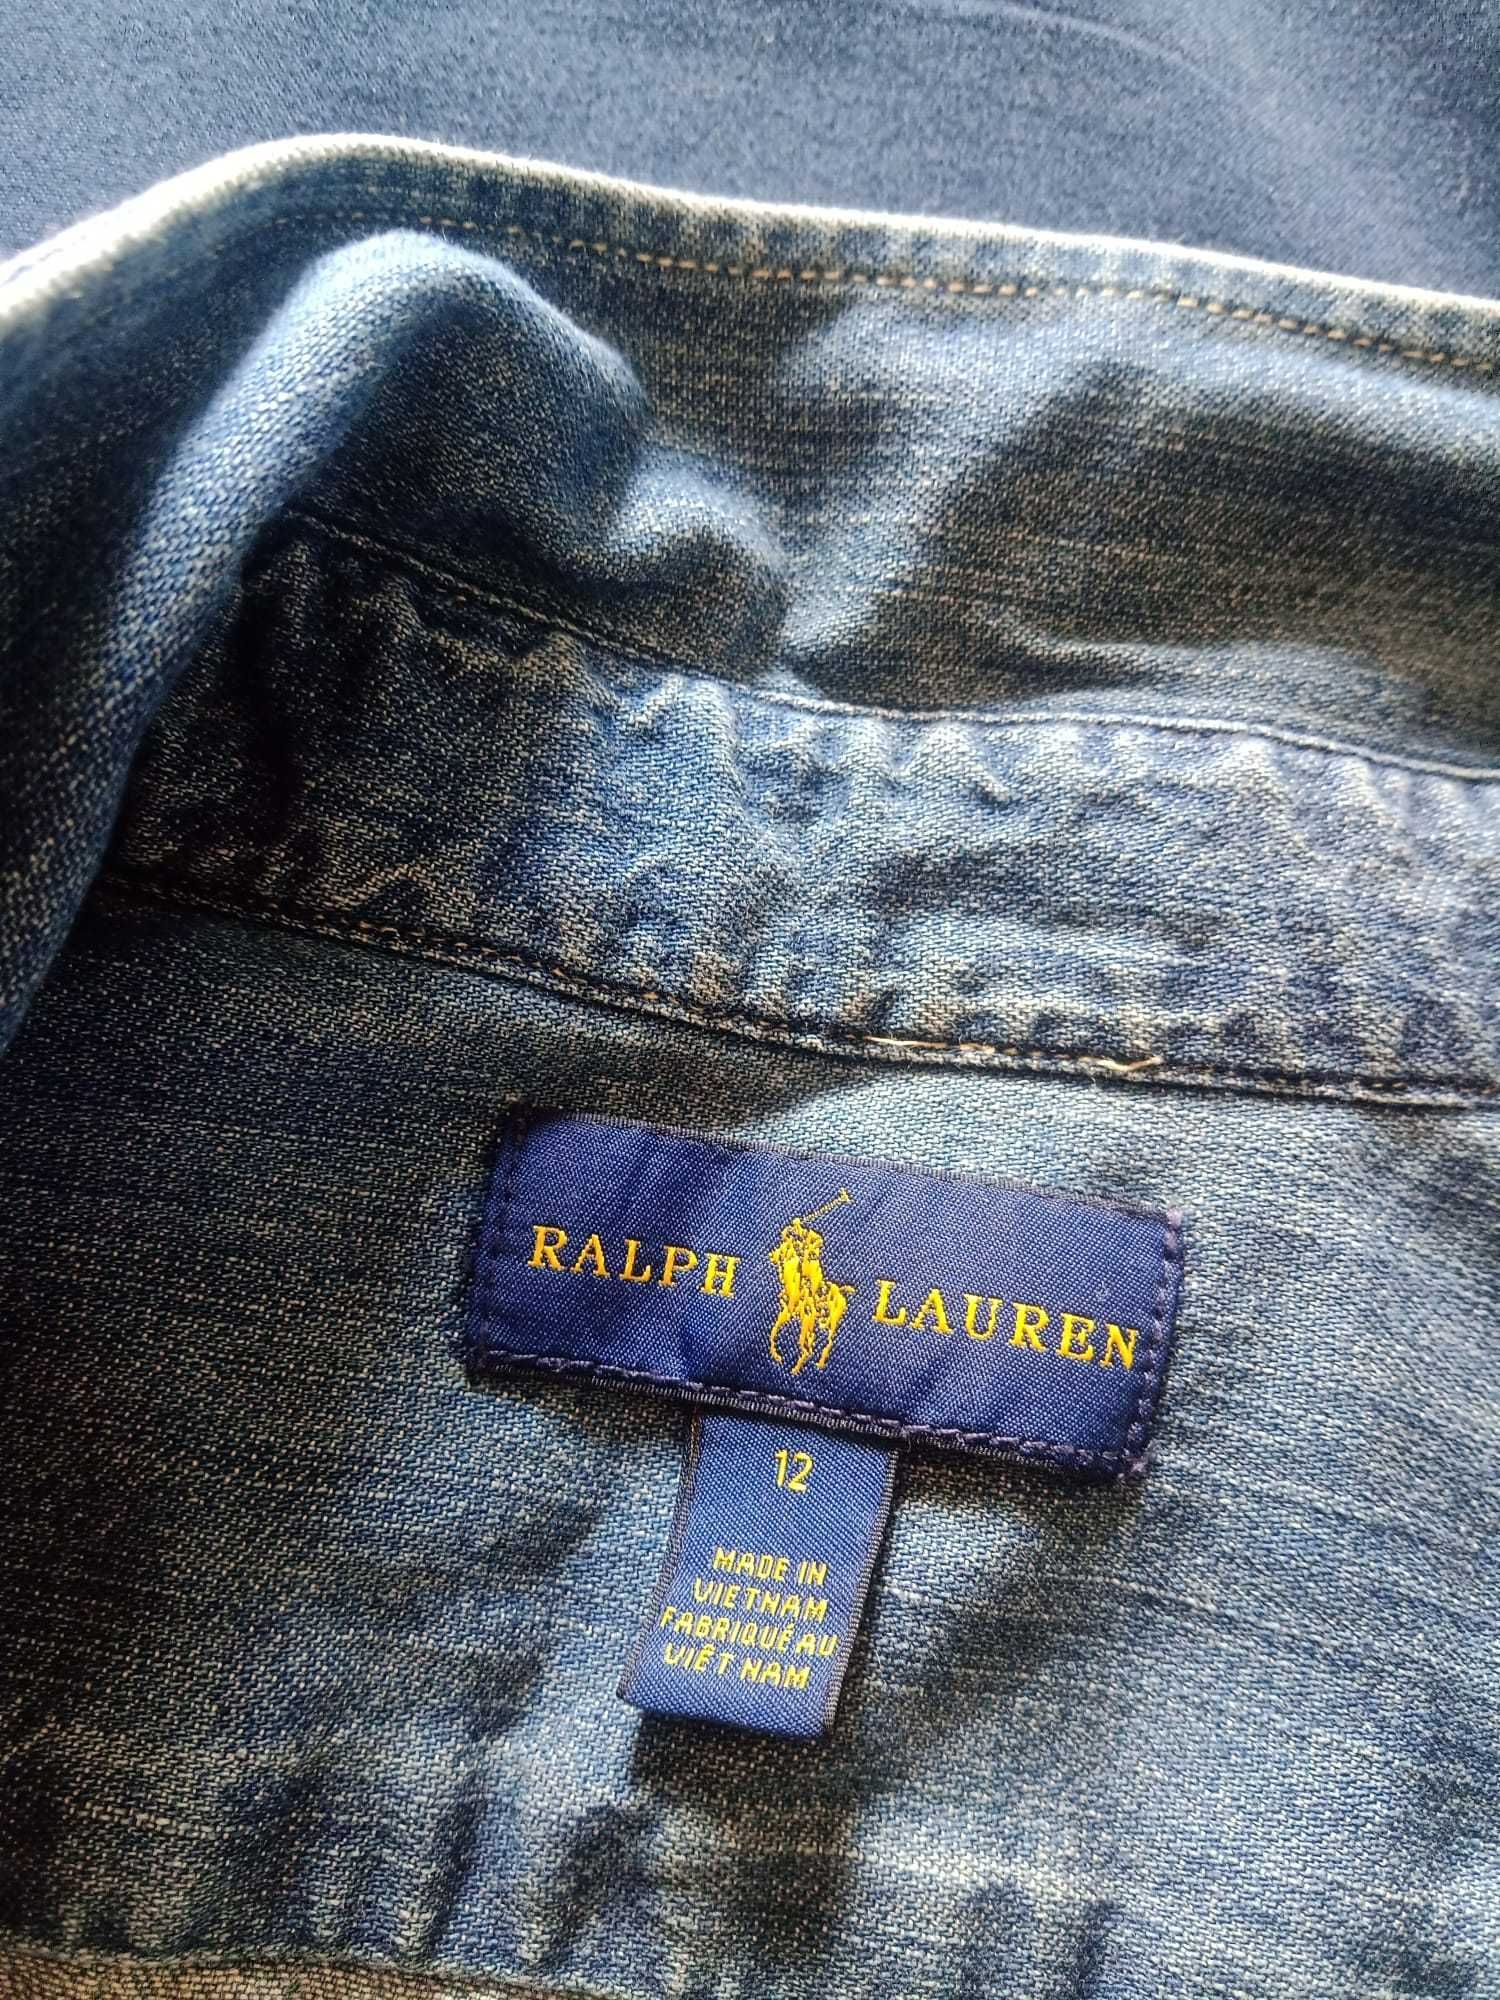 Ralph Lauren - Vestido ganga (camiseiro) - 12 anos